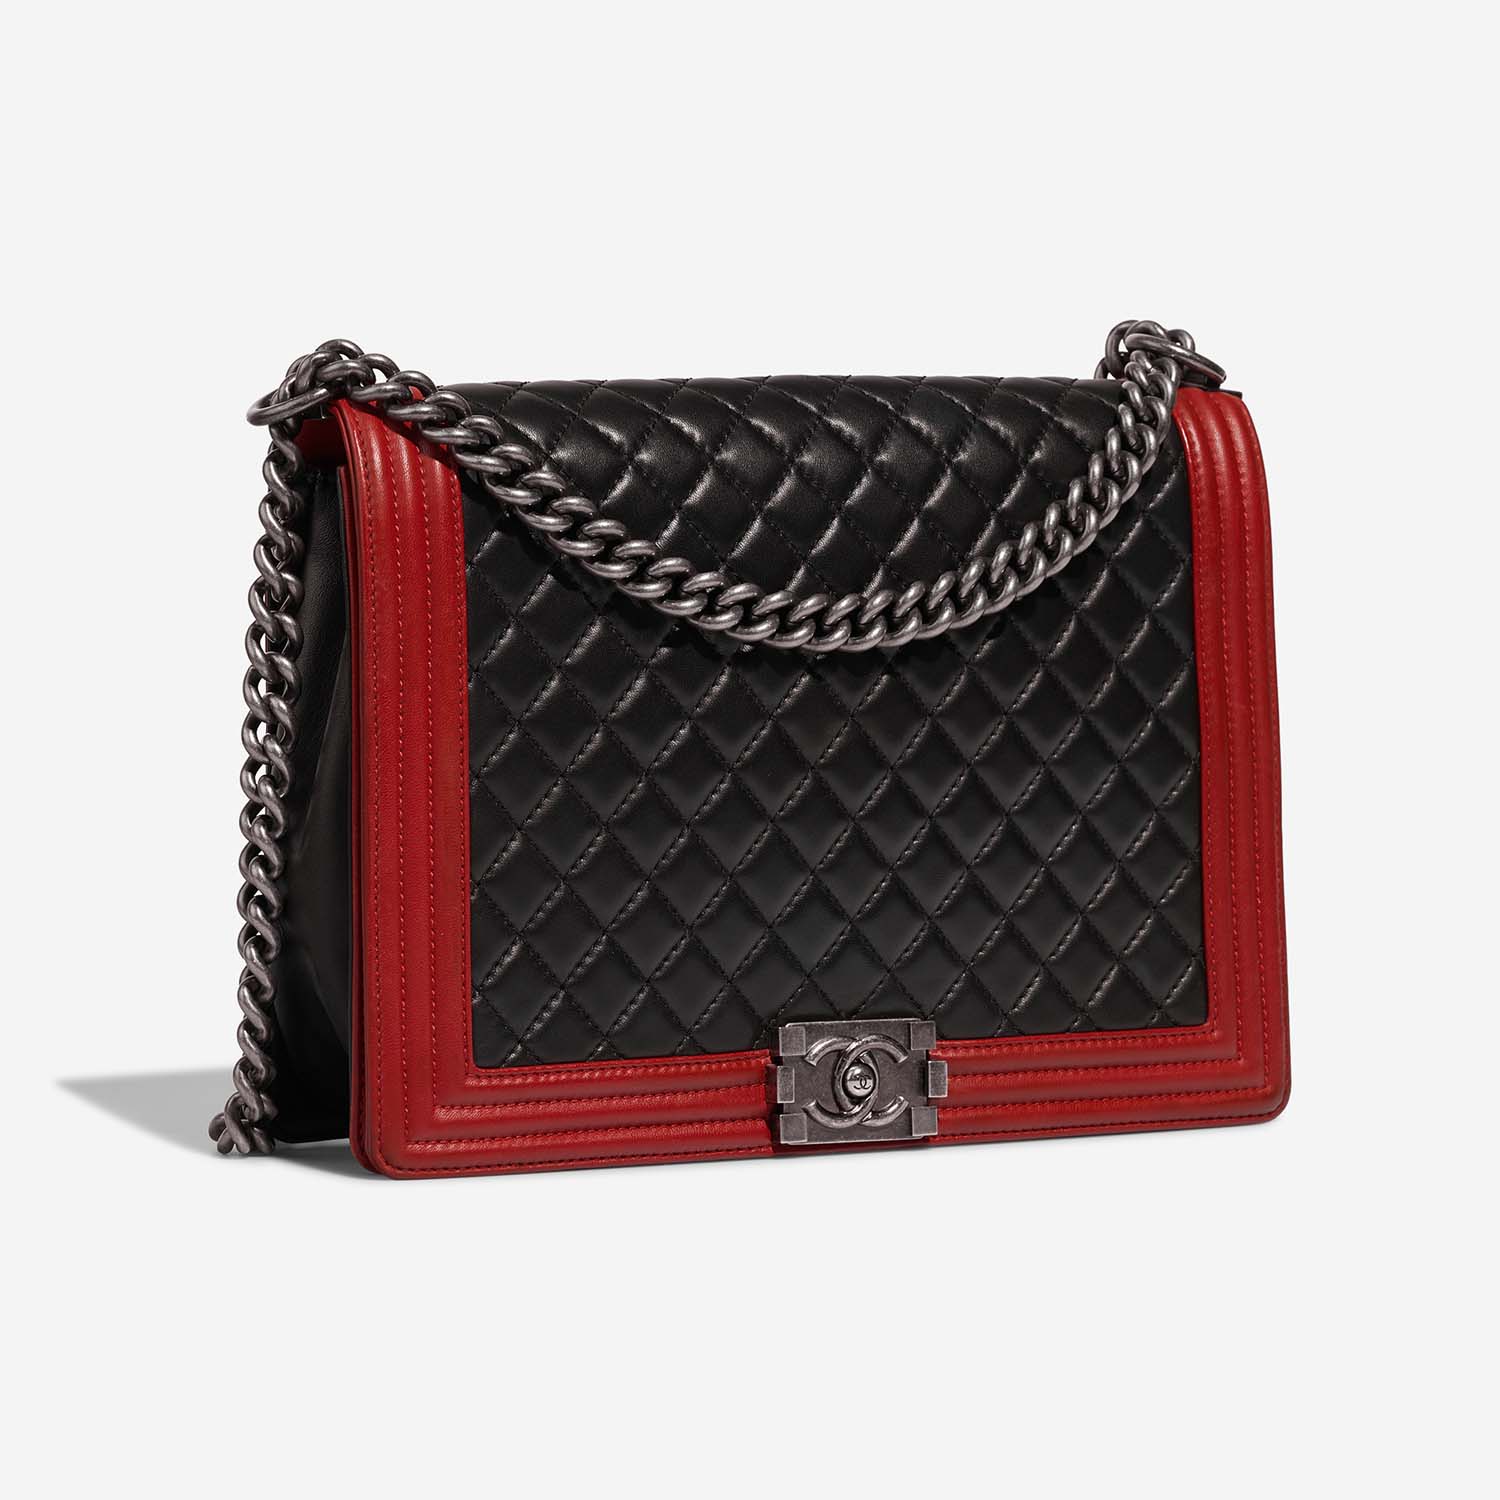 Chanel Boy Large Schwarz-Rot Side Front | Verkaufen Sie Ihre Designer-Tasche auf Saclab.com